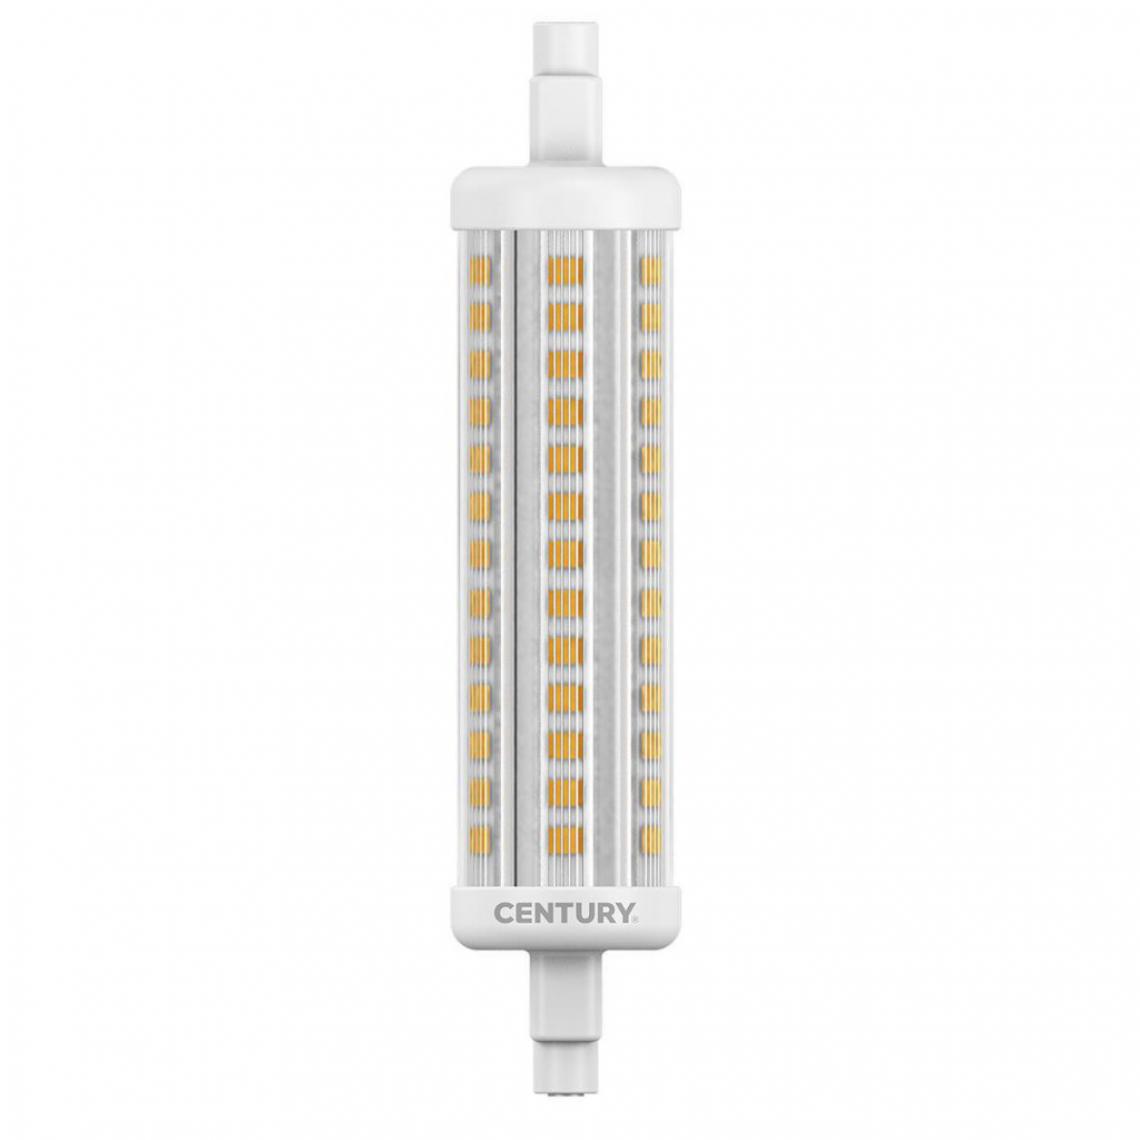 Alpexe - Ampoule LED R7S 15 W 1800 lm 3000 K - Ampoules LED